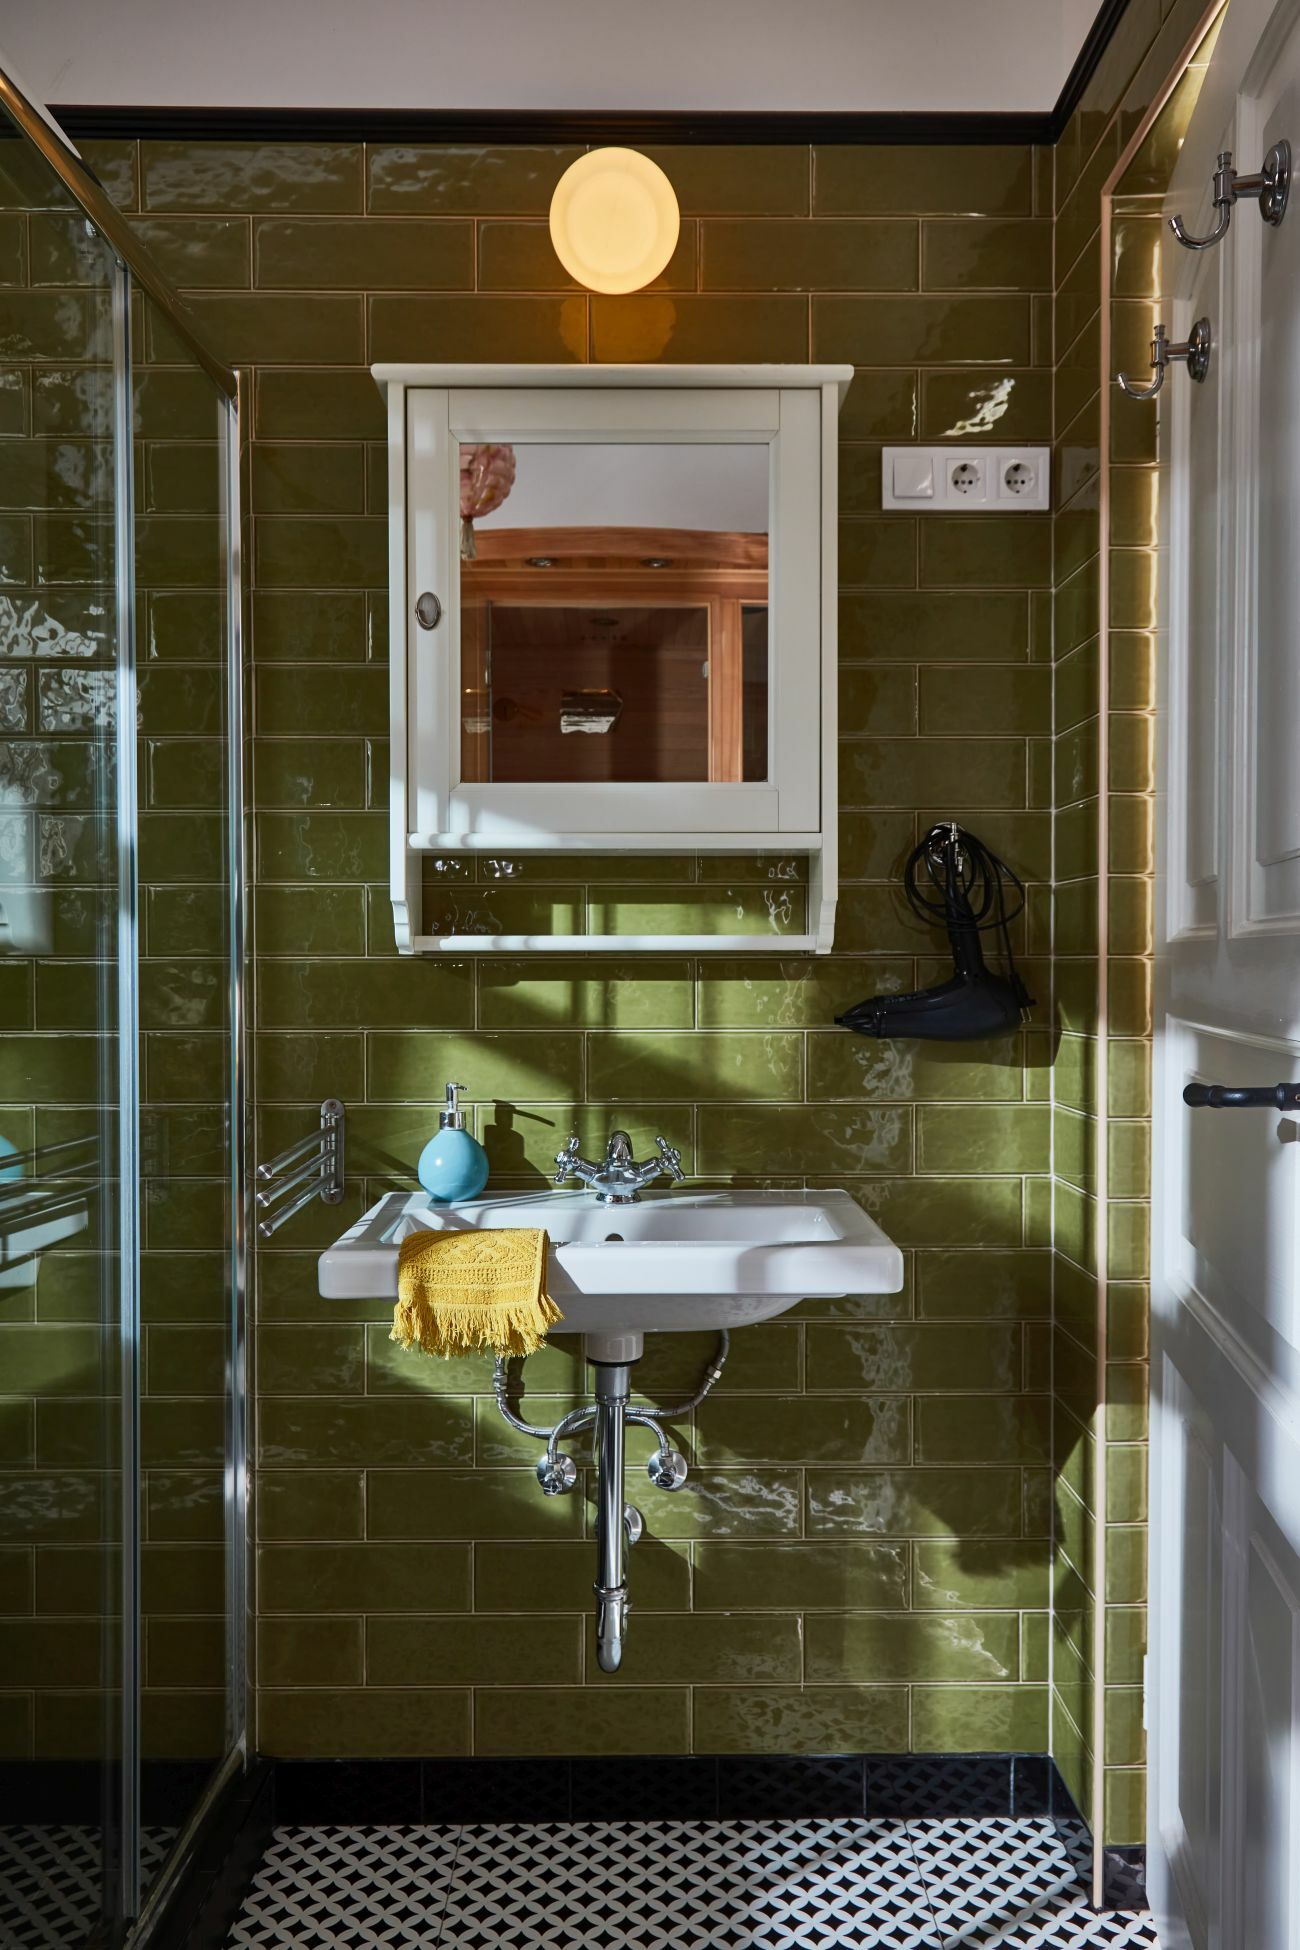 Klasszikus hatású zöld falicsempe ékesíti a fürdőt